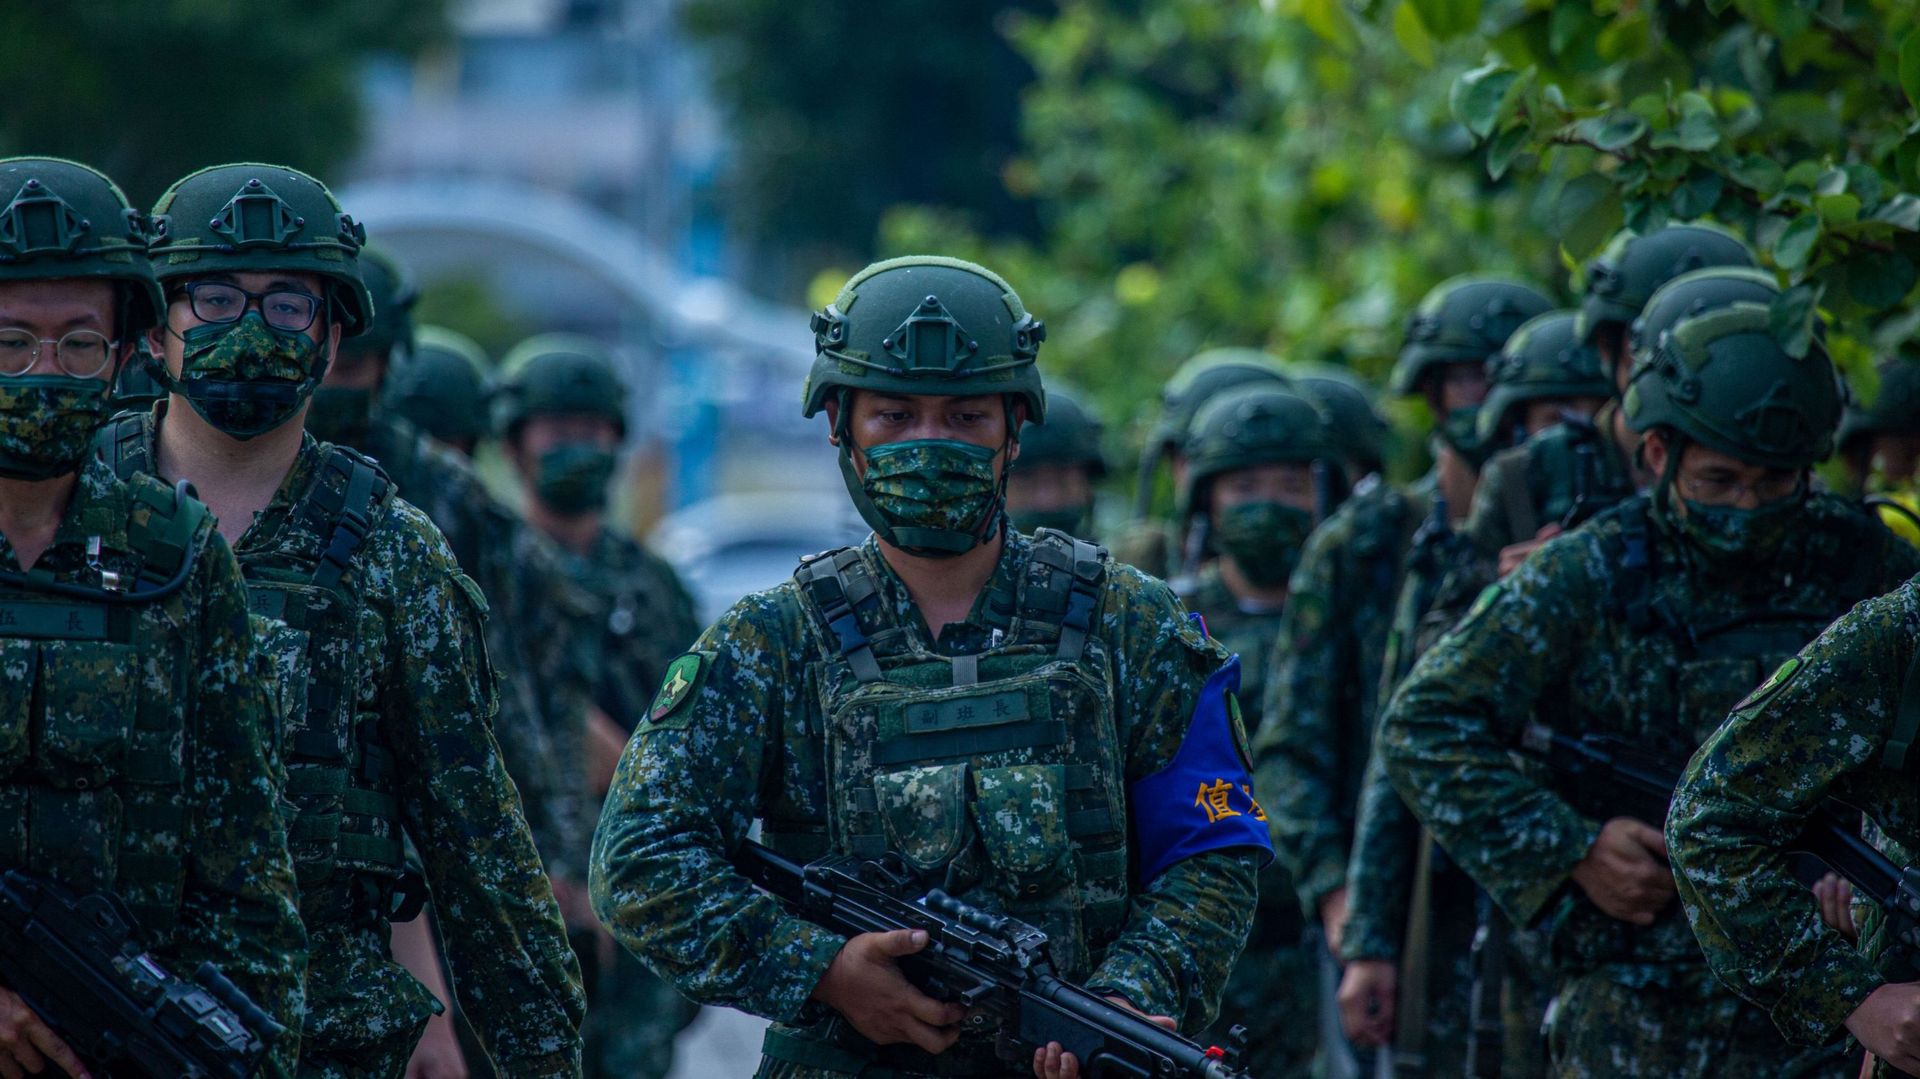 Des militaires taïwanais marchent en formation lors de l’exercice militaire Han Kuang, qui simule l’invasion de l’île par l’Armée populaire de libération (APL) de la Chine, le 27 juillet 2022 à New Taipei City, Taïwan.